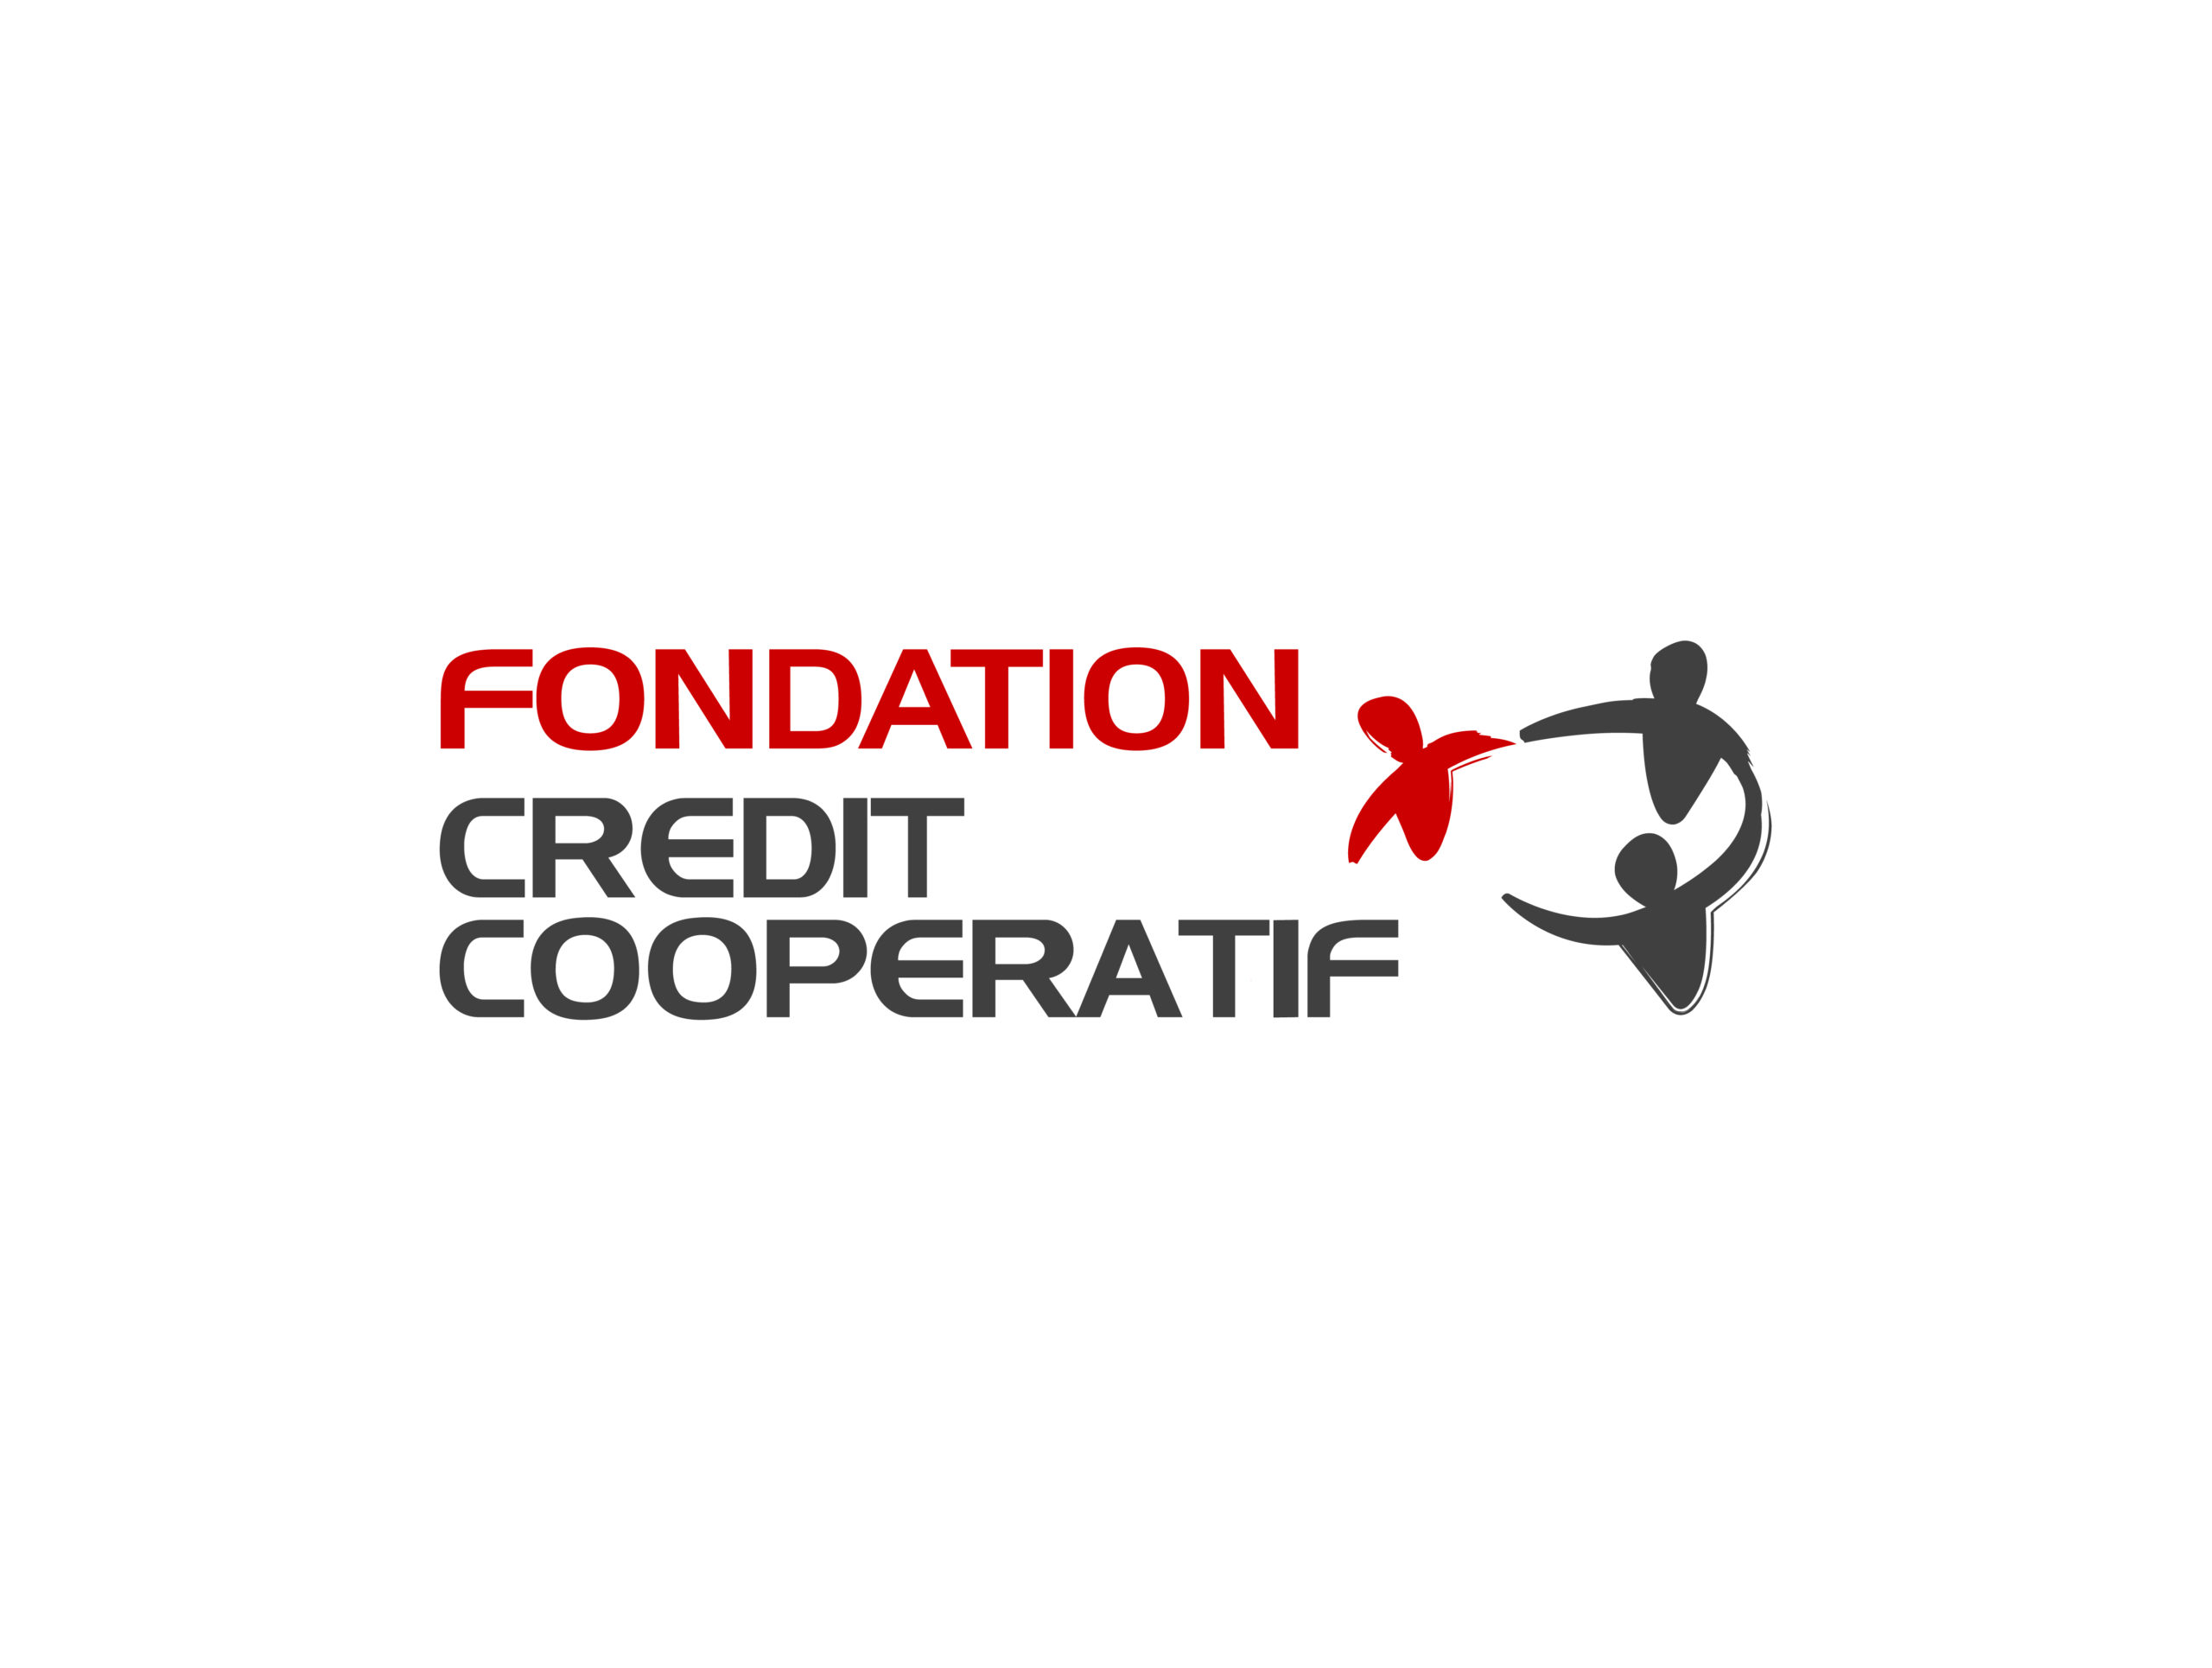 fondation-credit-coop-scaled.jpg